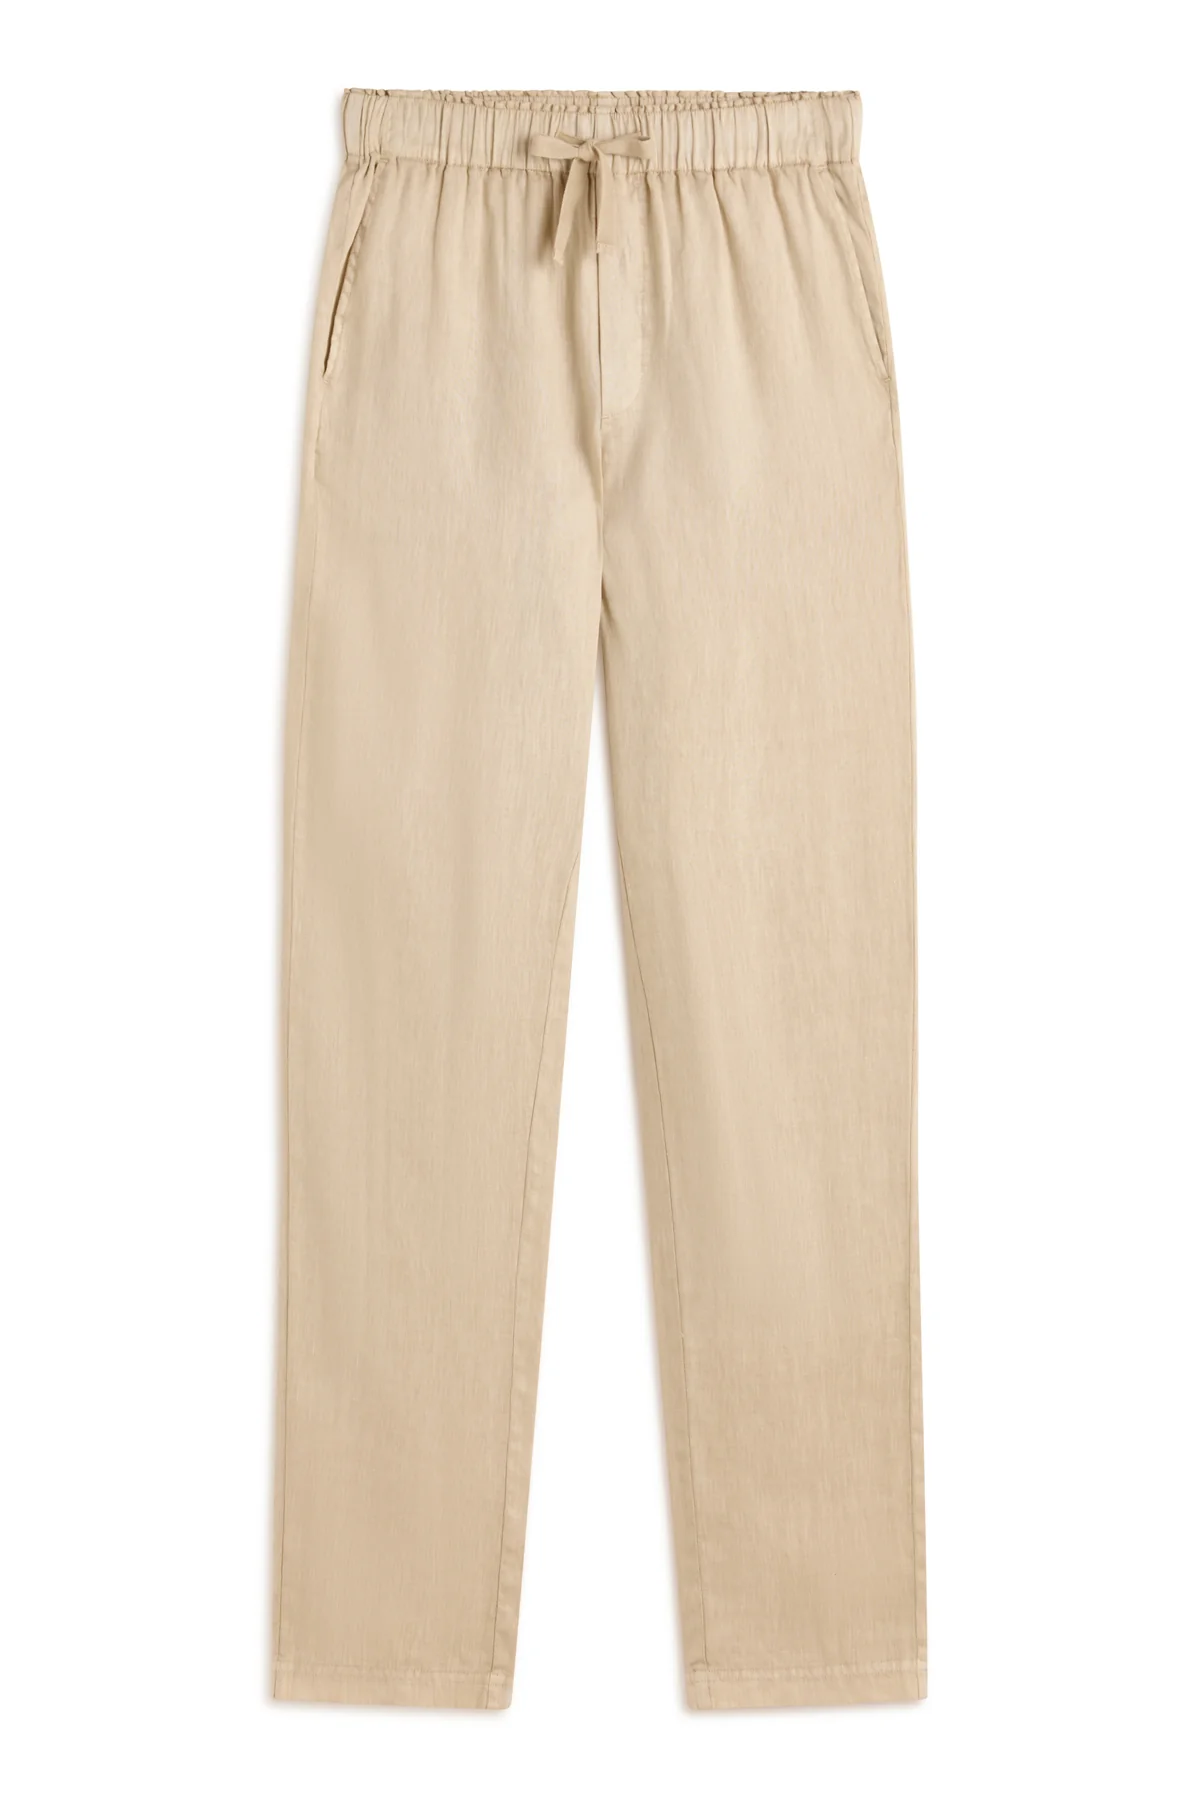 ECOALF pantalón en lino color camel - 5